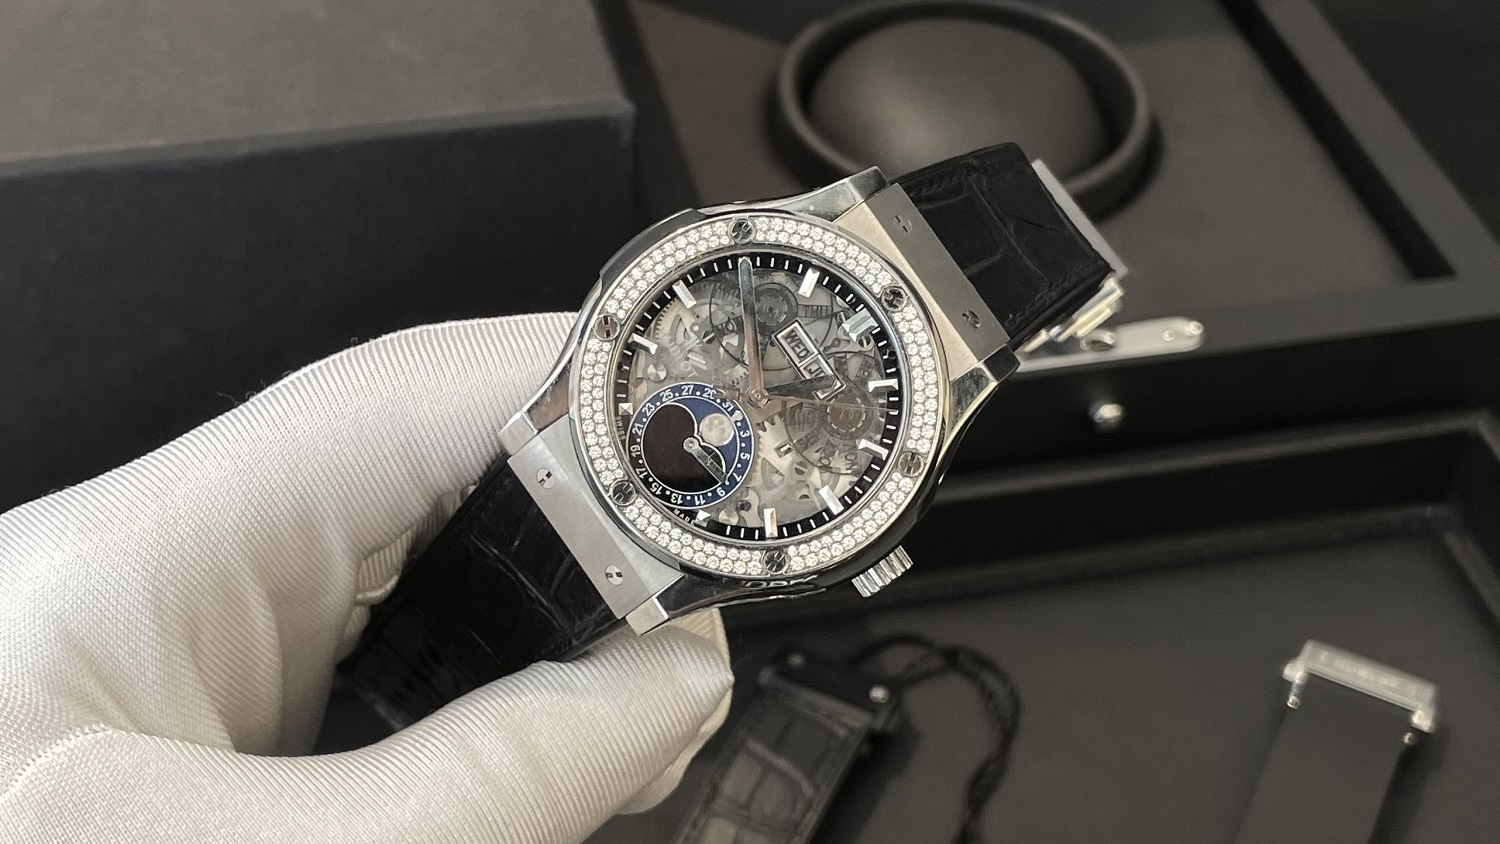  Đồng hồ Hublot - những chiếc đồng hồ của thời đại 